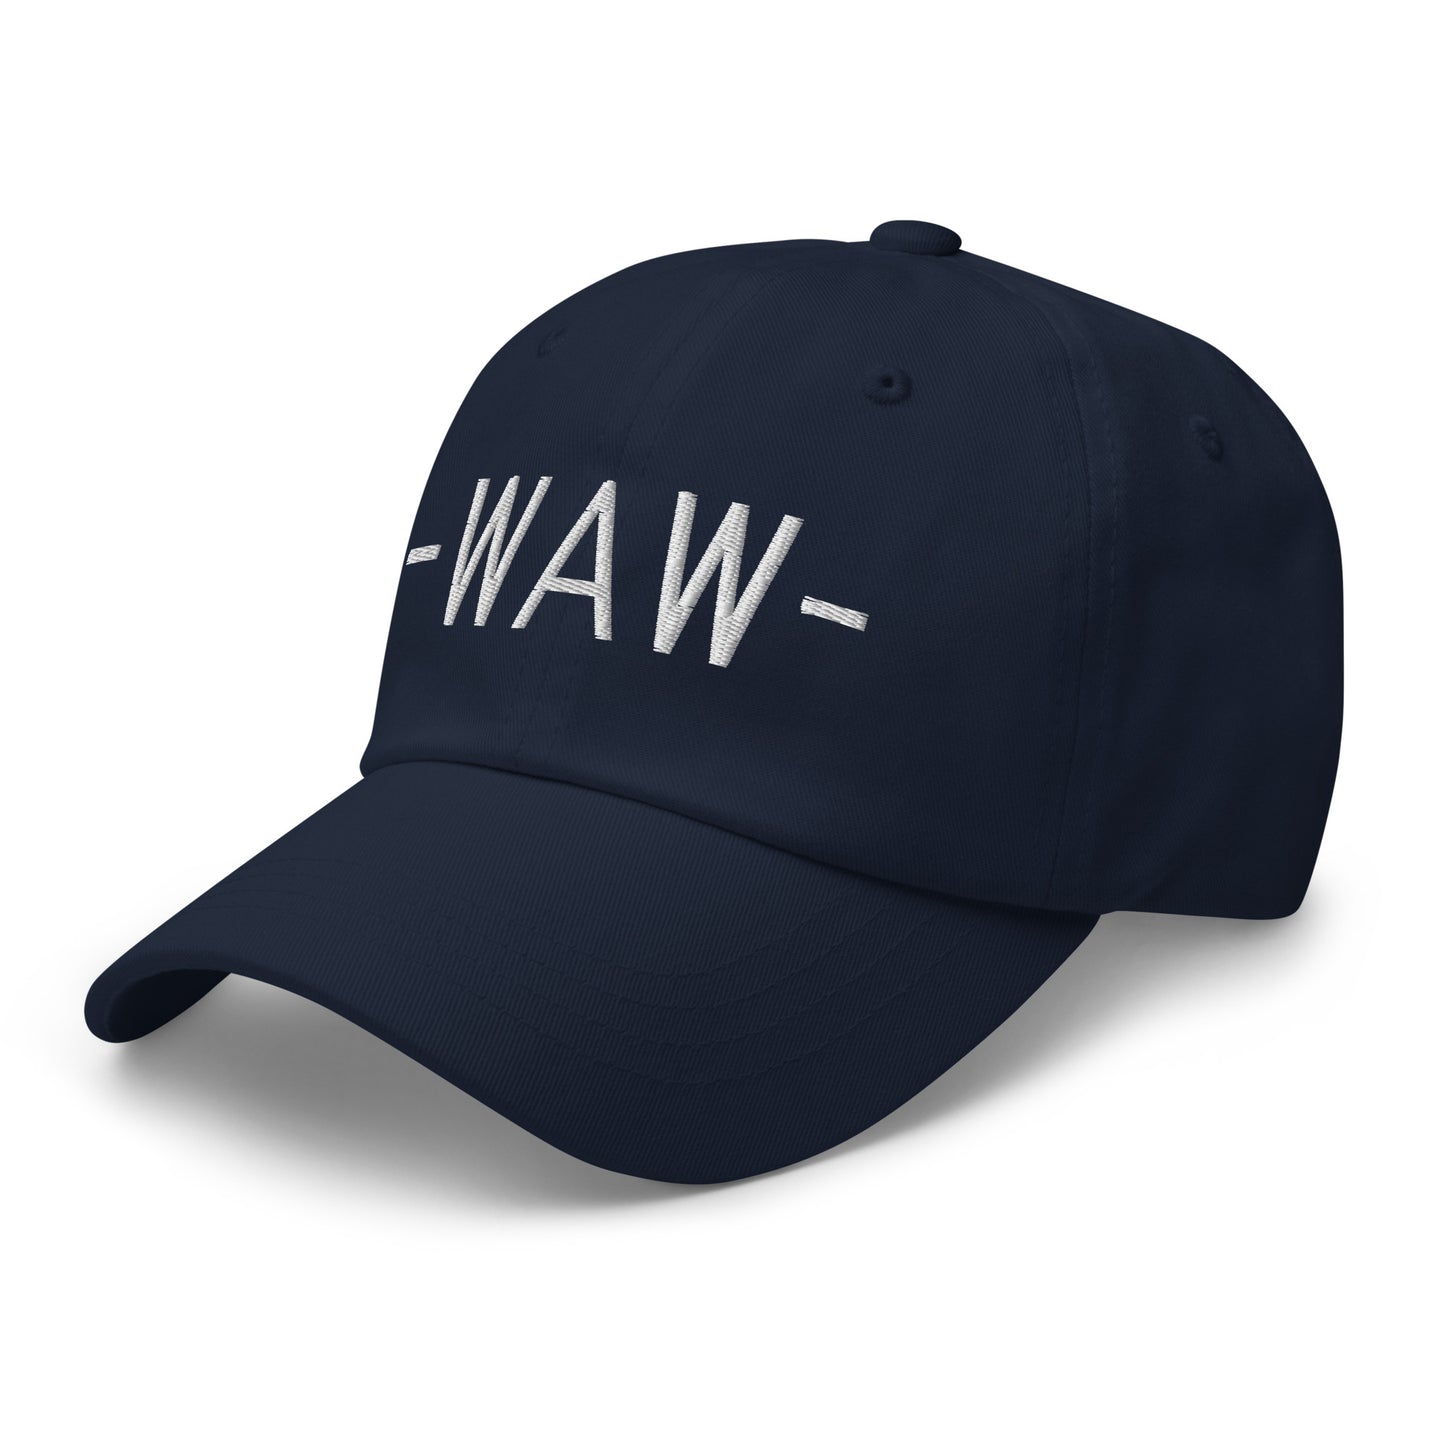 Souvenir Baseball Cap - White • WAW Warsaw • YHM Designs - Image 15